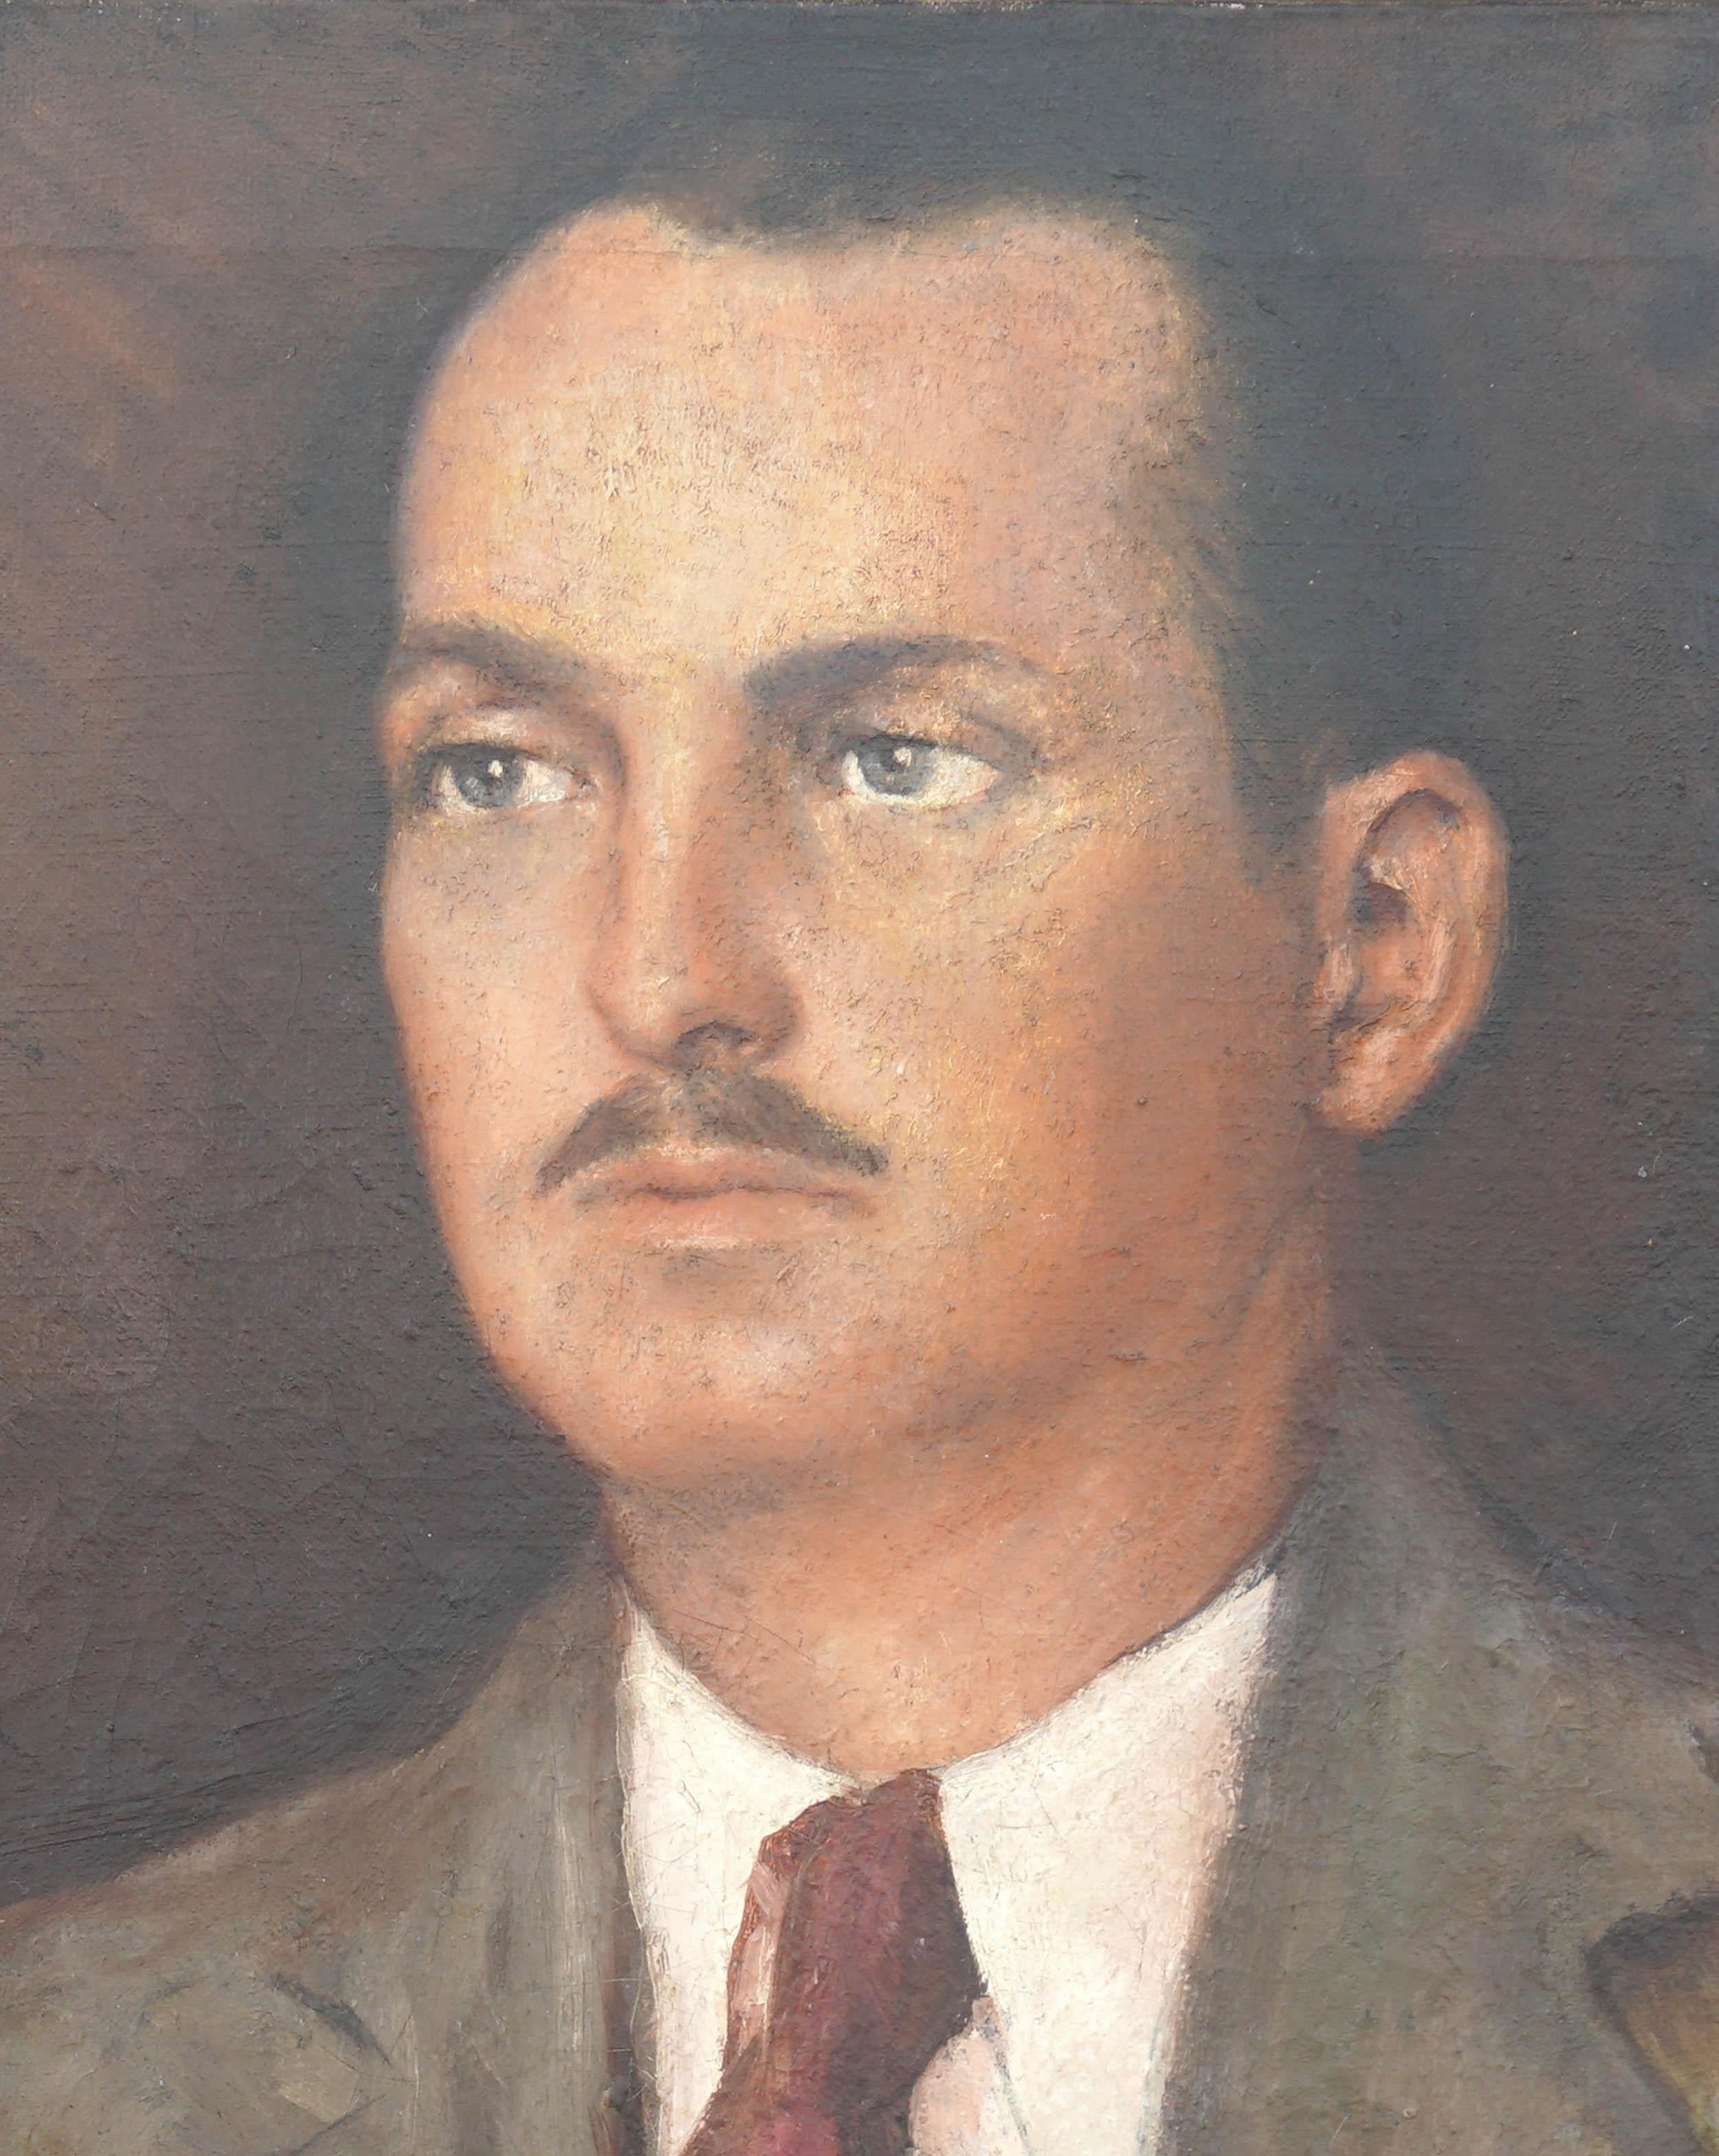 Porträt eines Mannes – Ähnliches von Django Reinhardt – Painting von Unknown